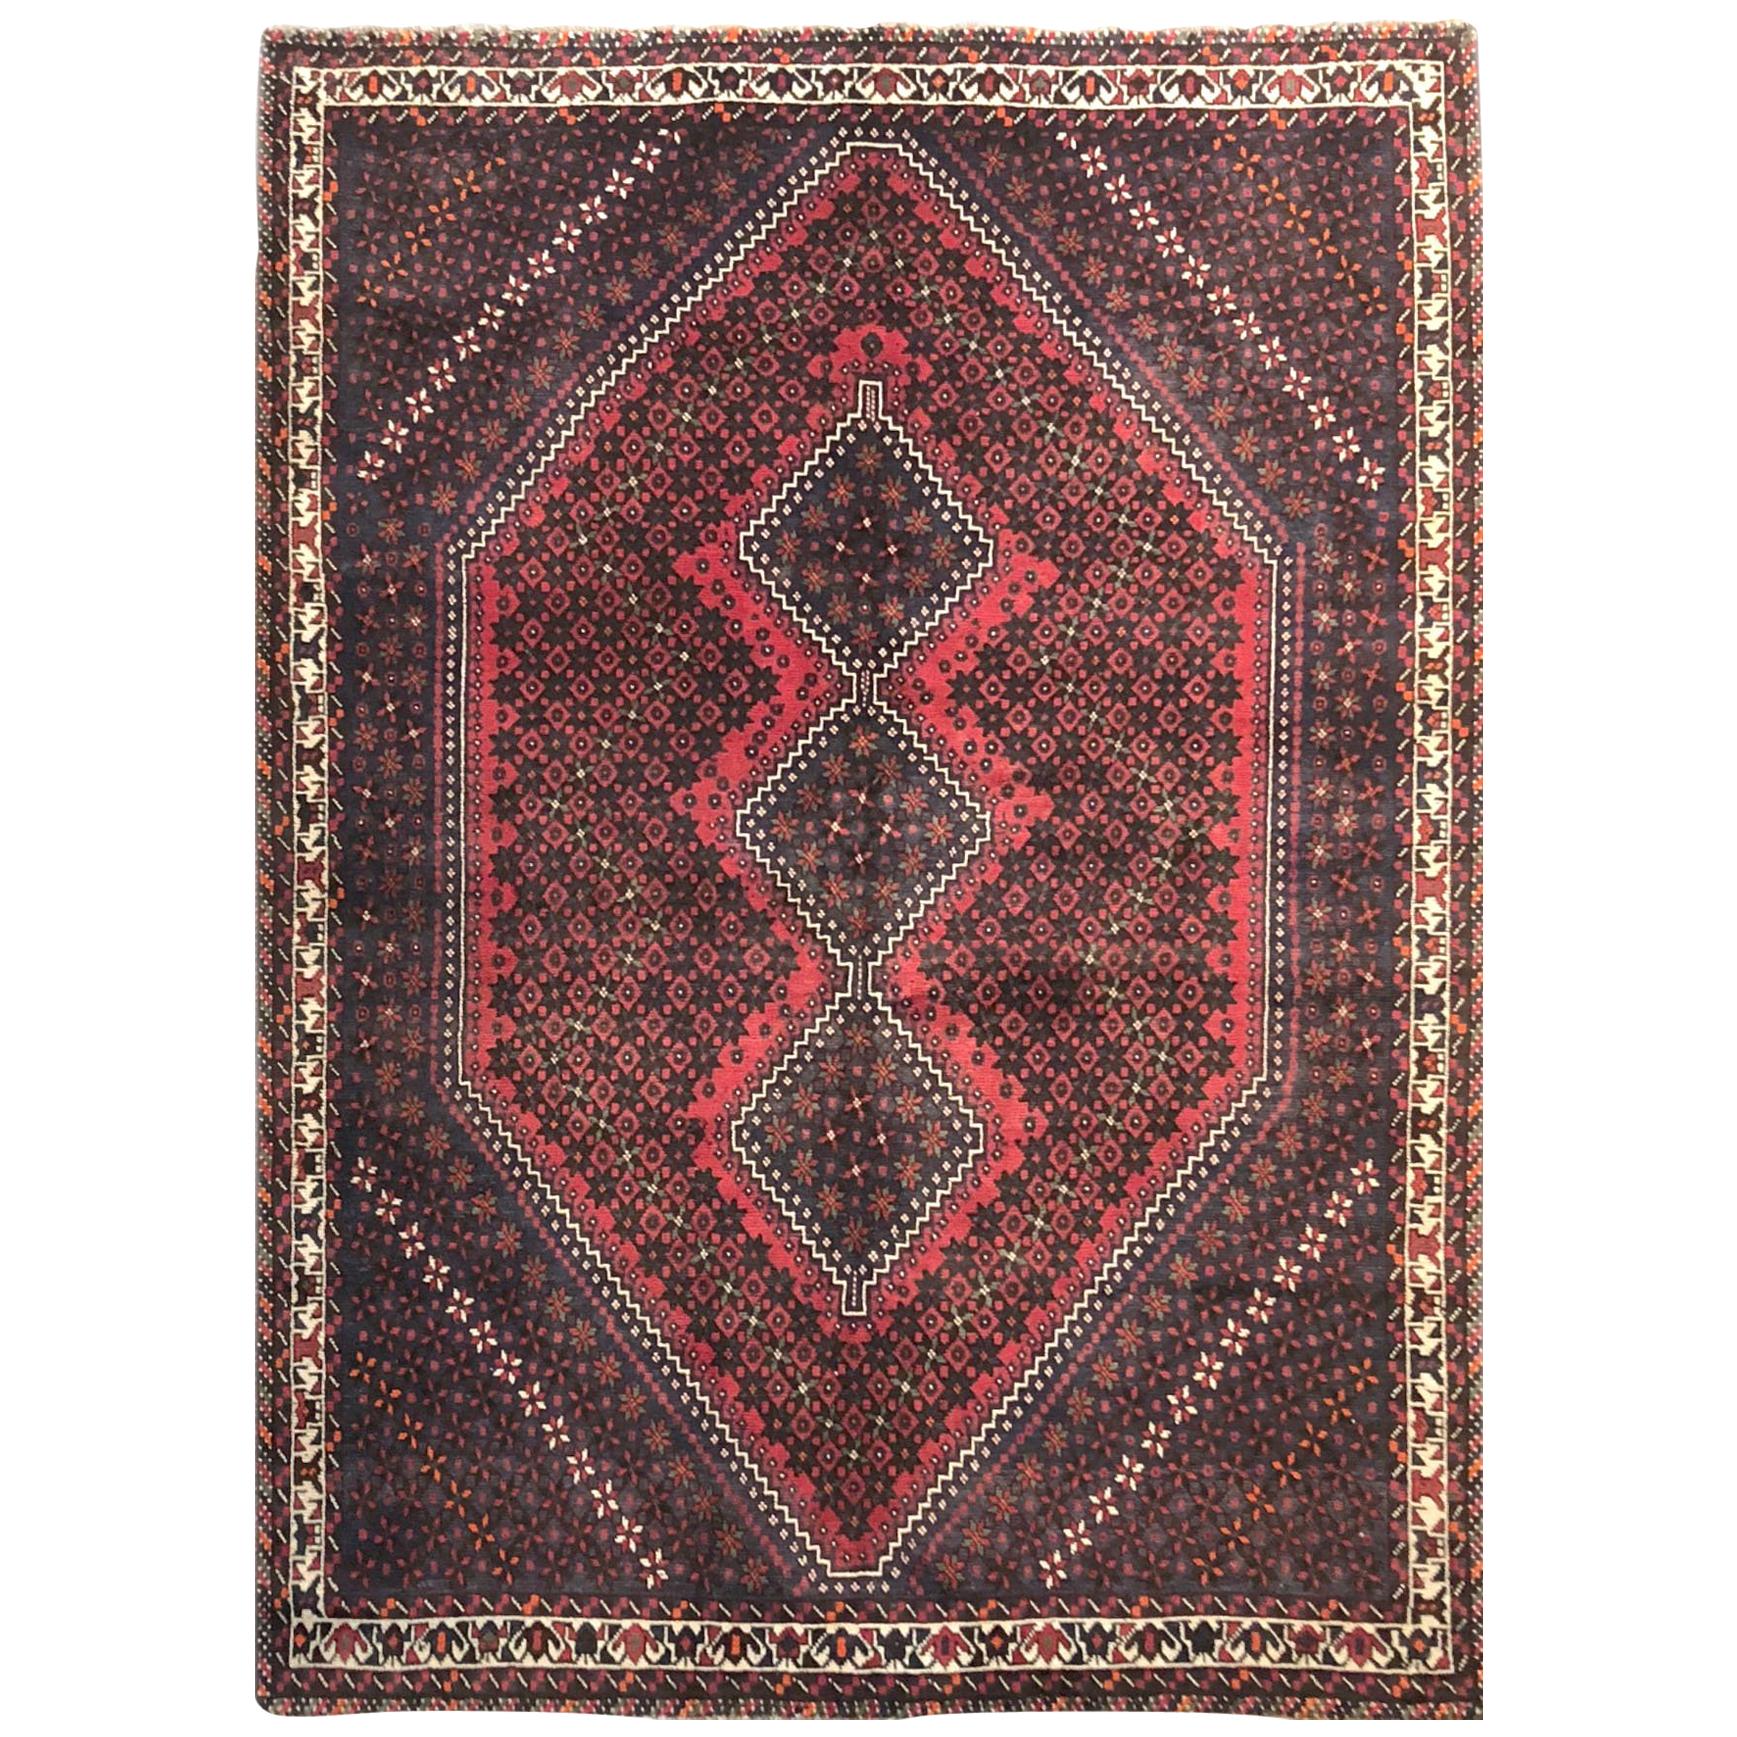 Vieux tapis persan noué à la main, rouge, médaillon répété, Shiraz, vers 1960